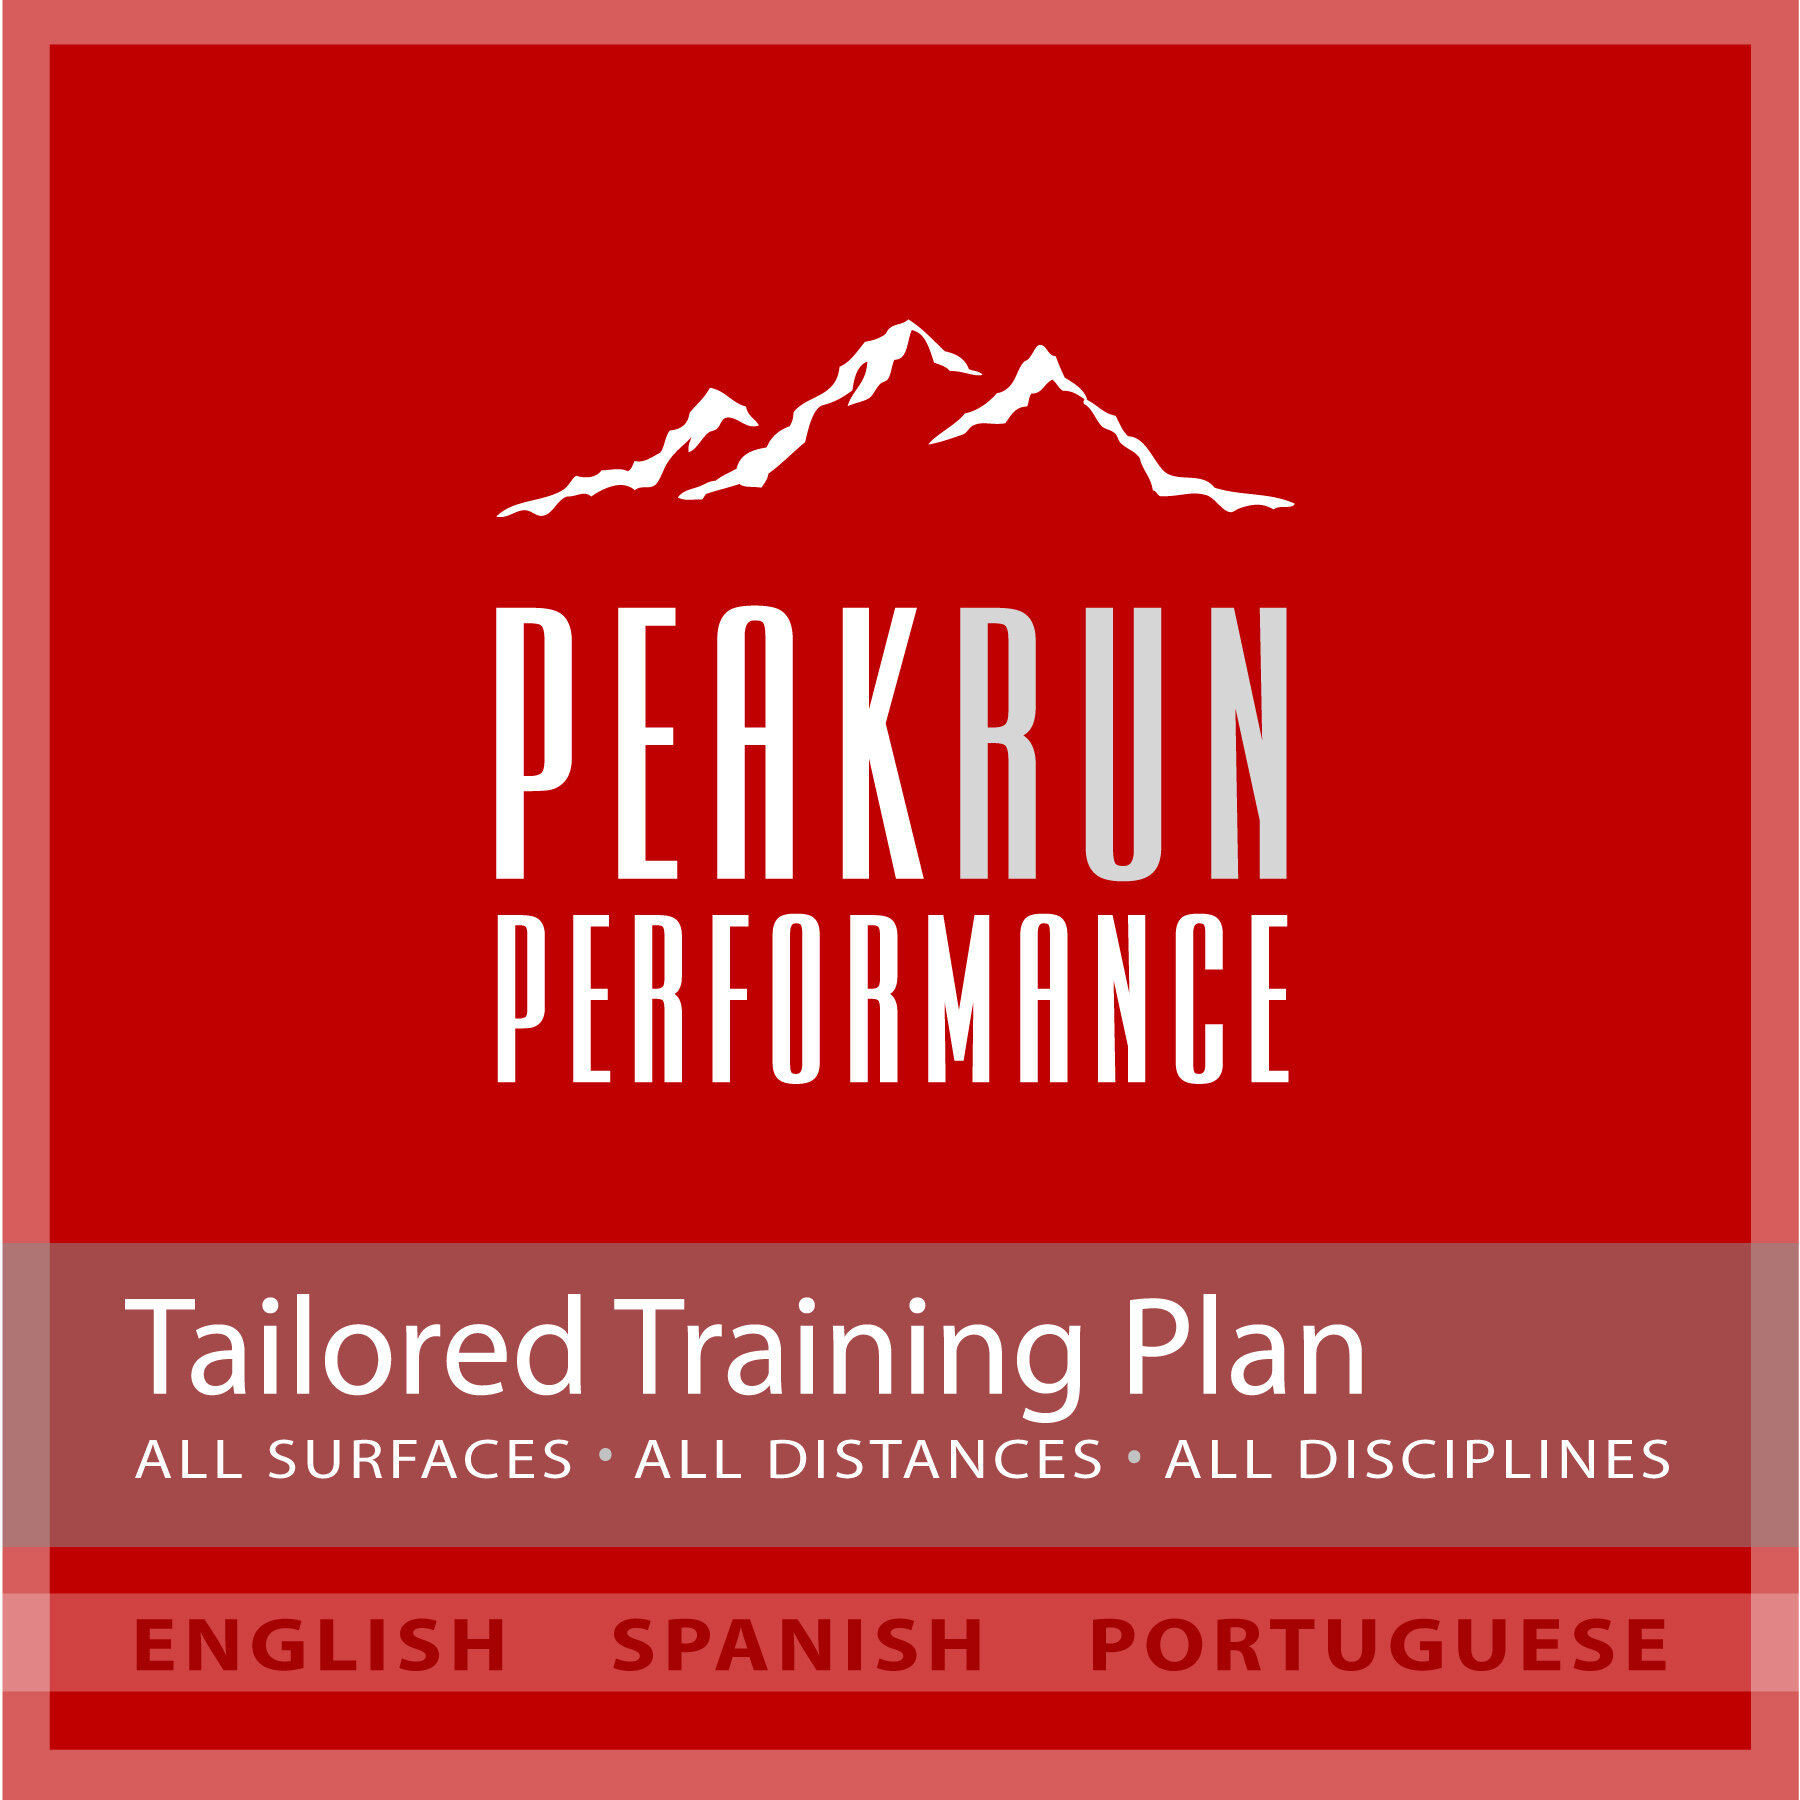 Tailored Training Plan - Red.jpg